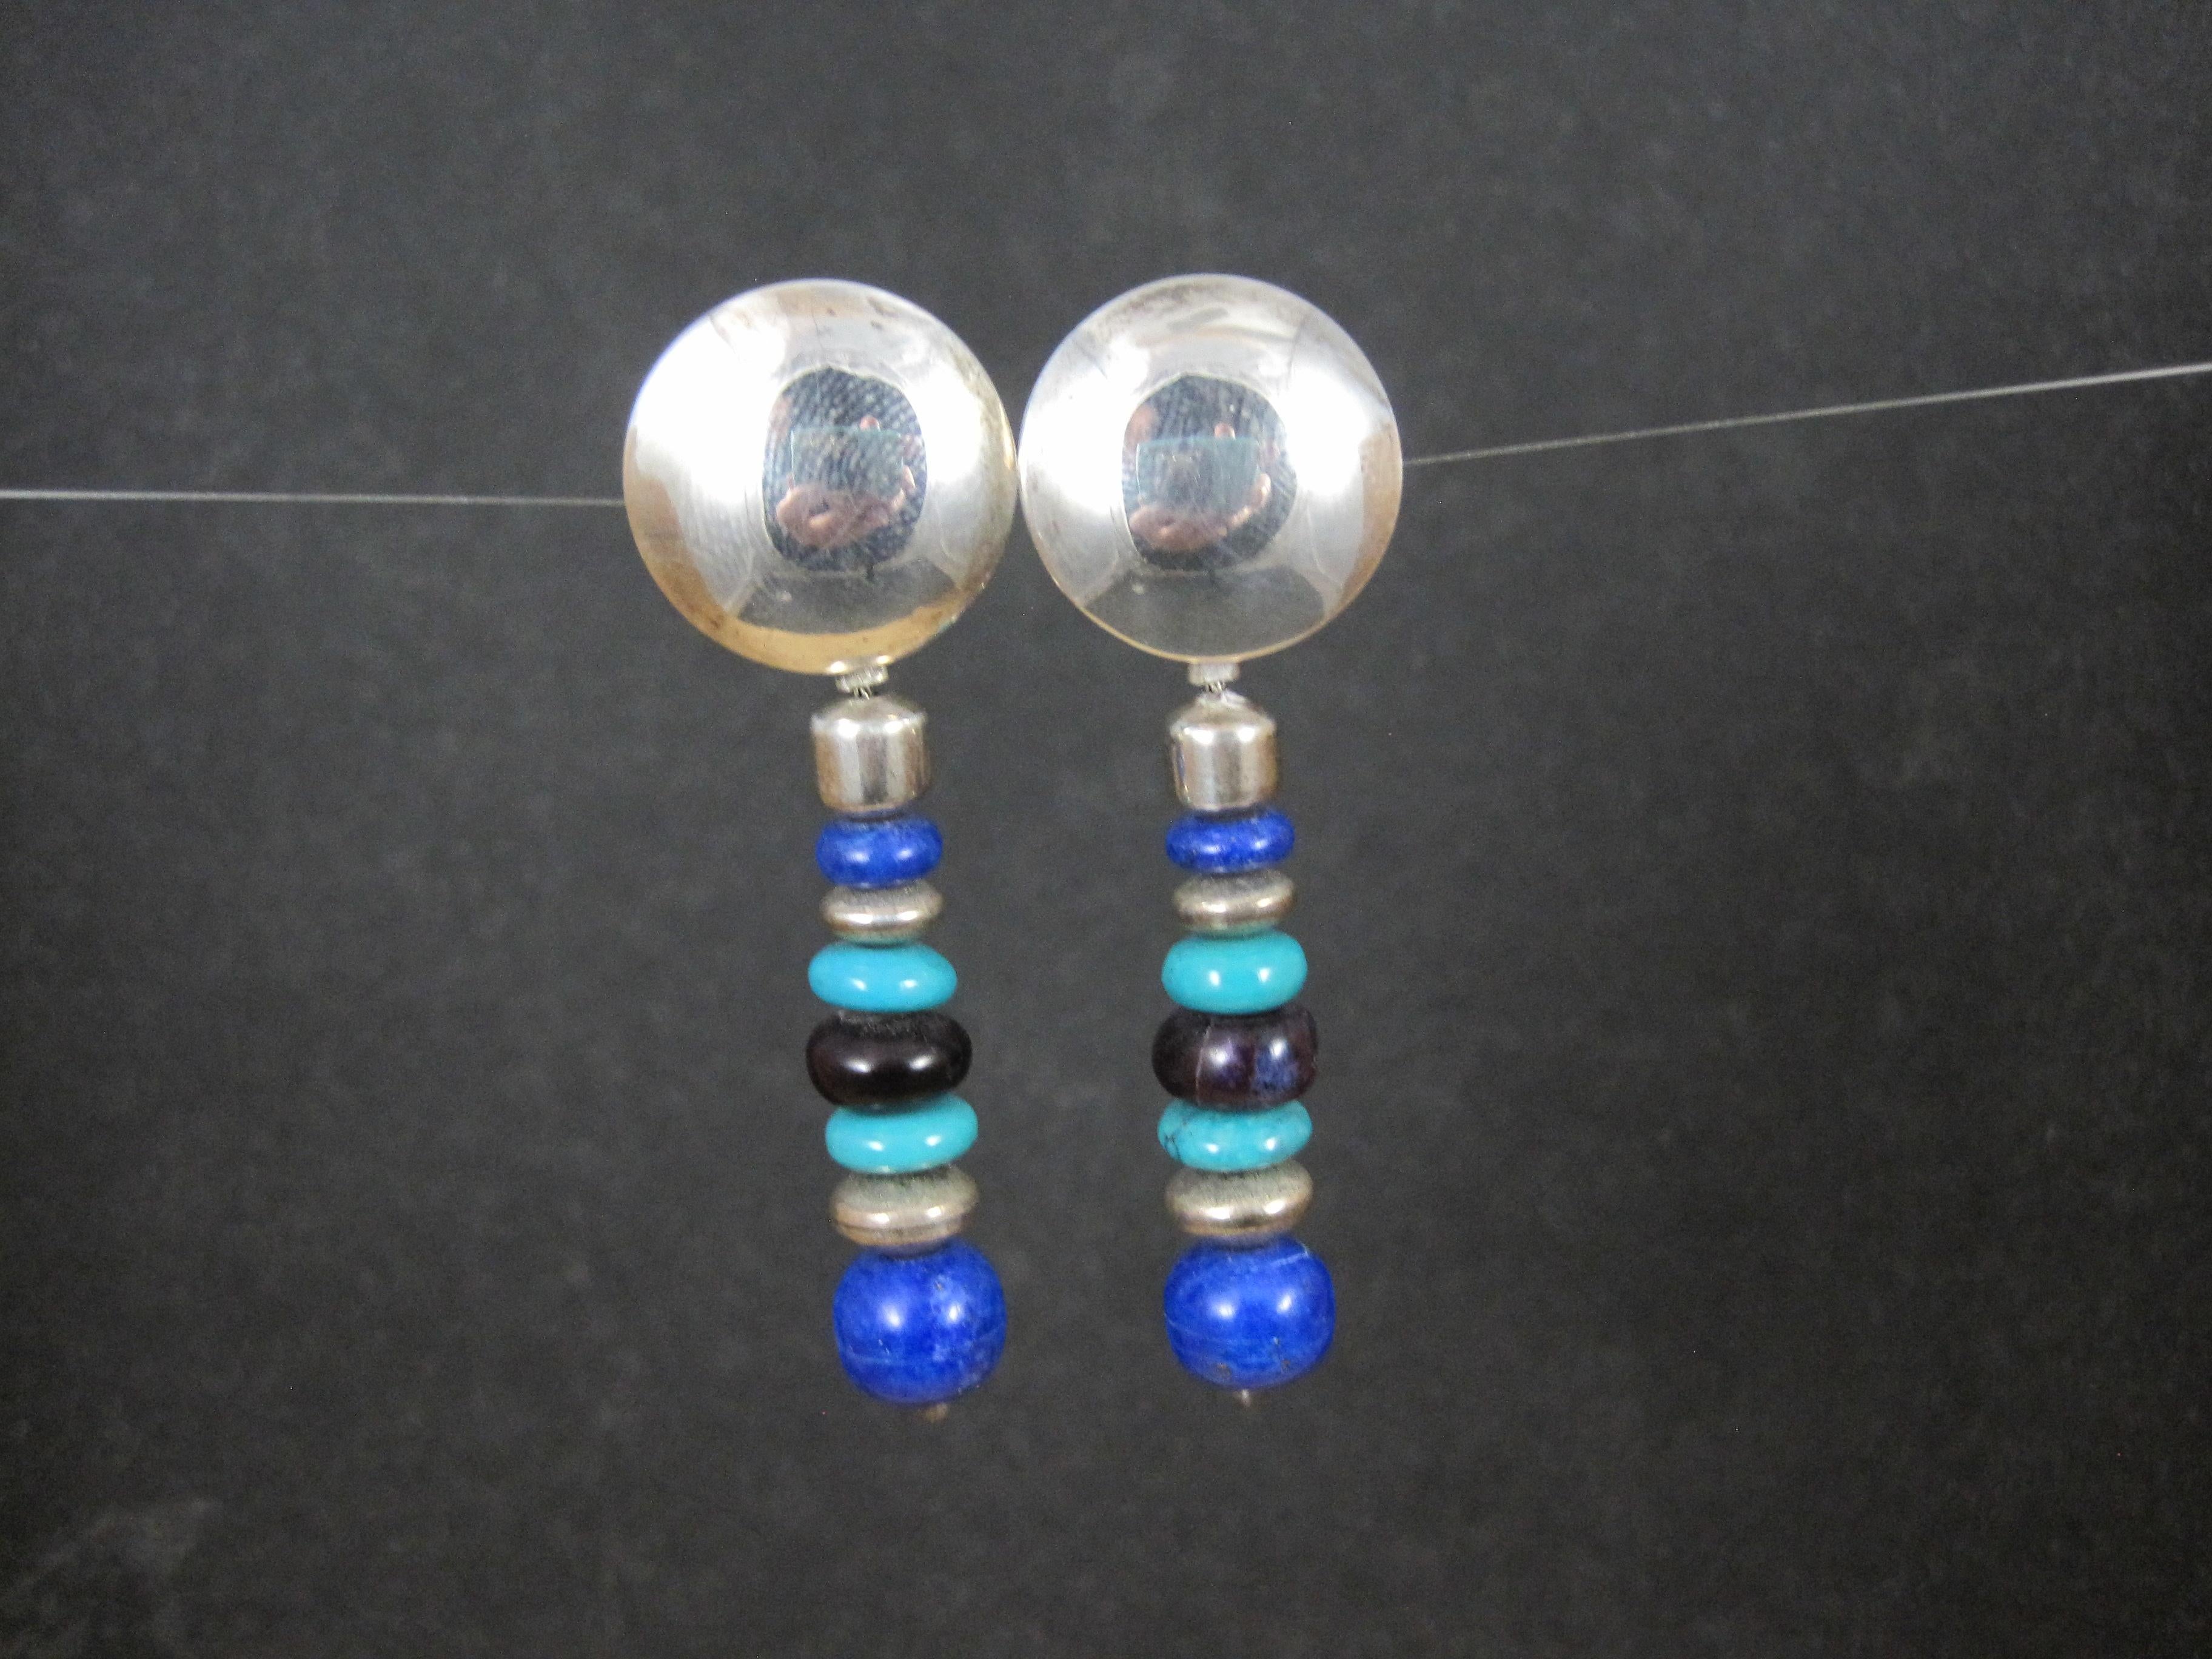 Diese wunderschönen indianischen Ohrringe bestehen aus Sterlingsilber, leuchtend blauem Lapislazuli, Türkis und Charoit-Edelsteinen.

Diese Ohrringe messen 3/4 Zoll an der Spitze und 2 1/4 Zoll lang.

Markierungen: Keine

Zustand: Ausgezeichnet mit